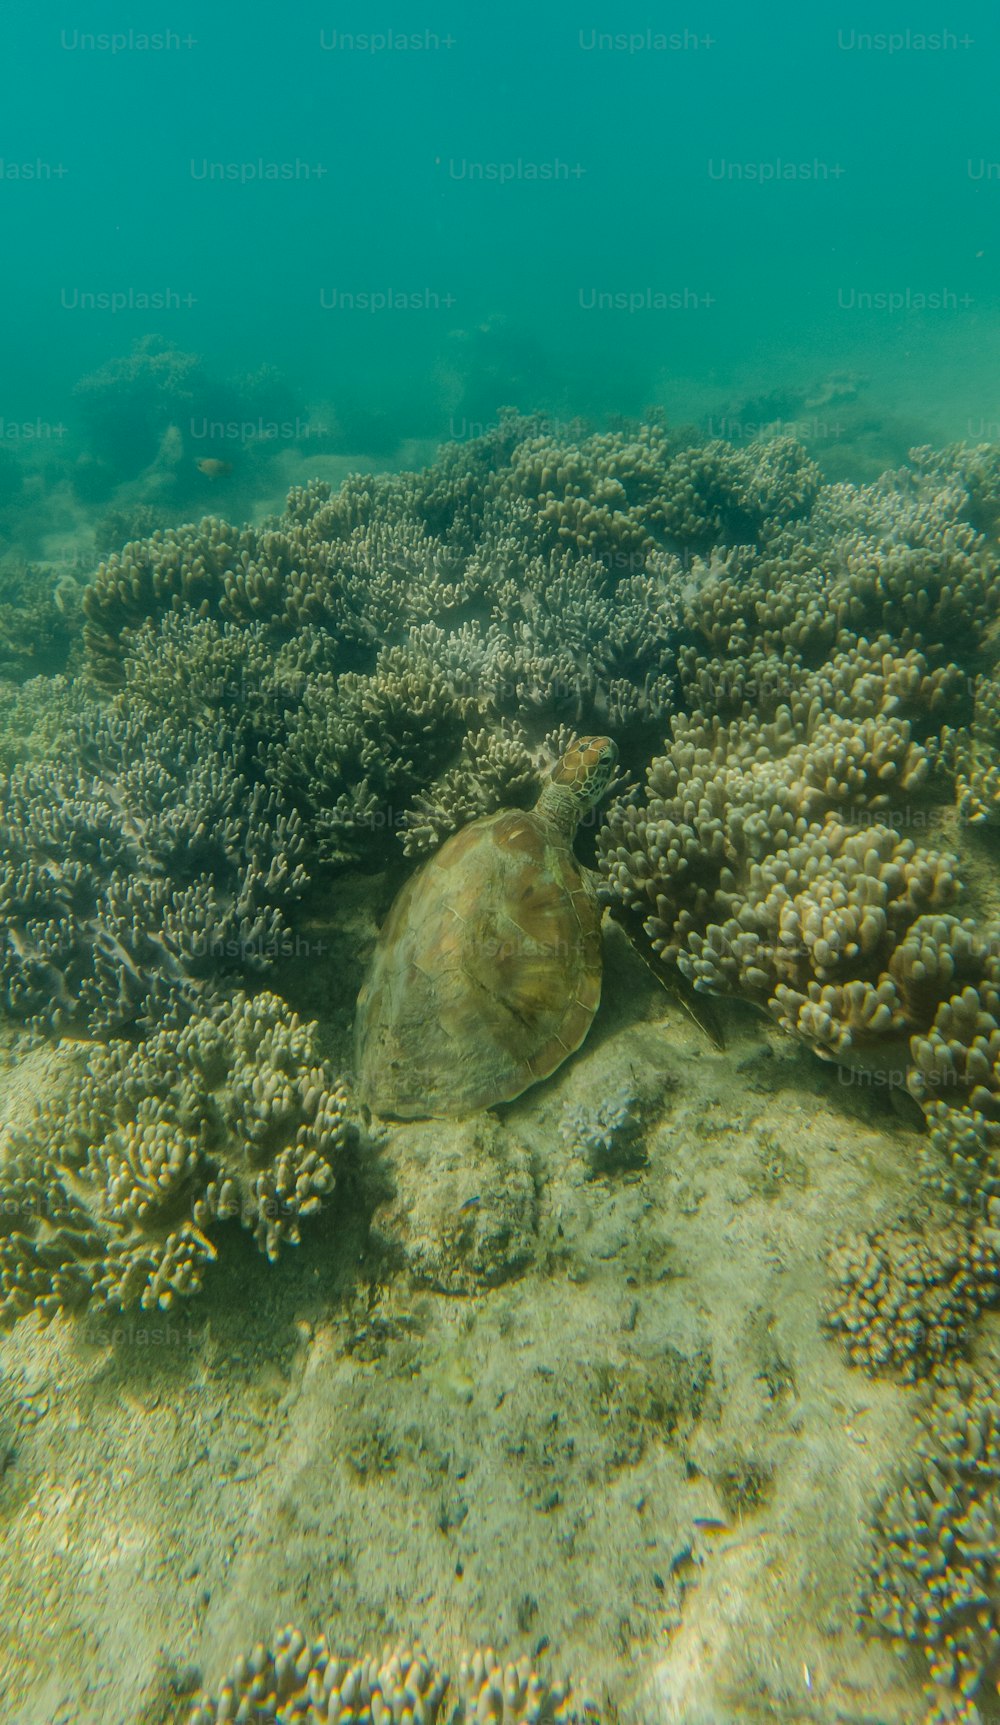 Una tortuga nadando en el oc�éano